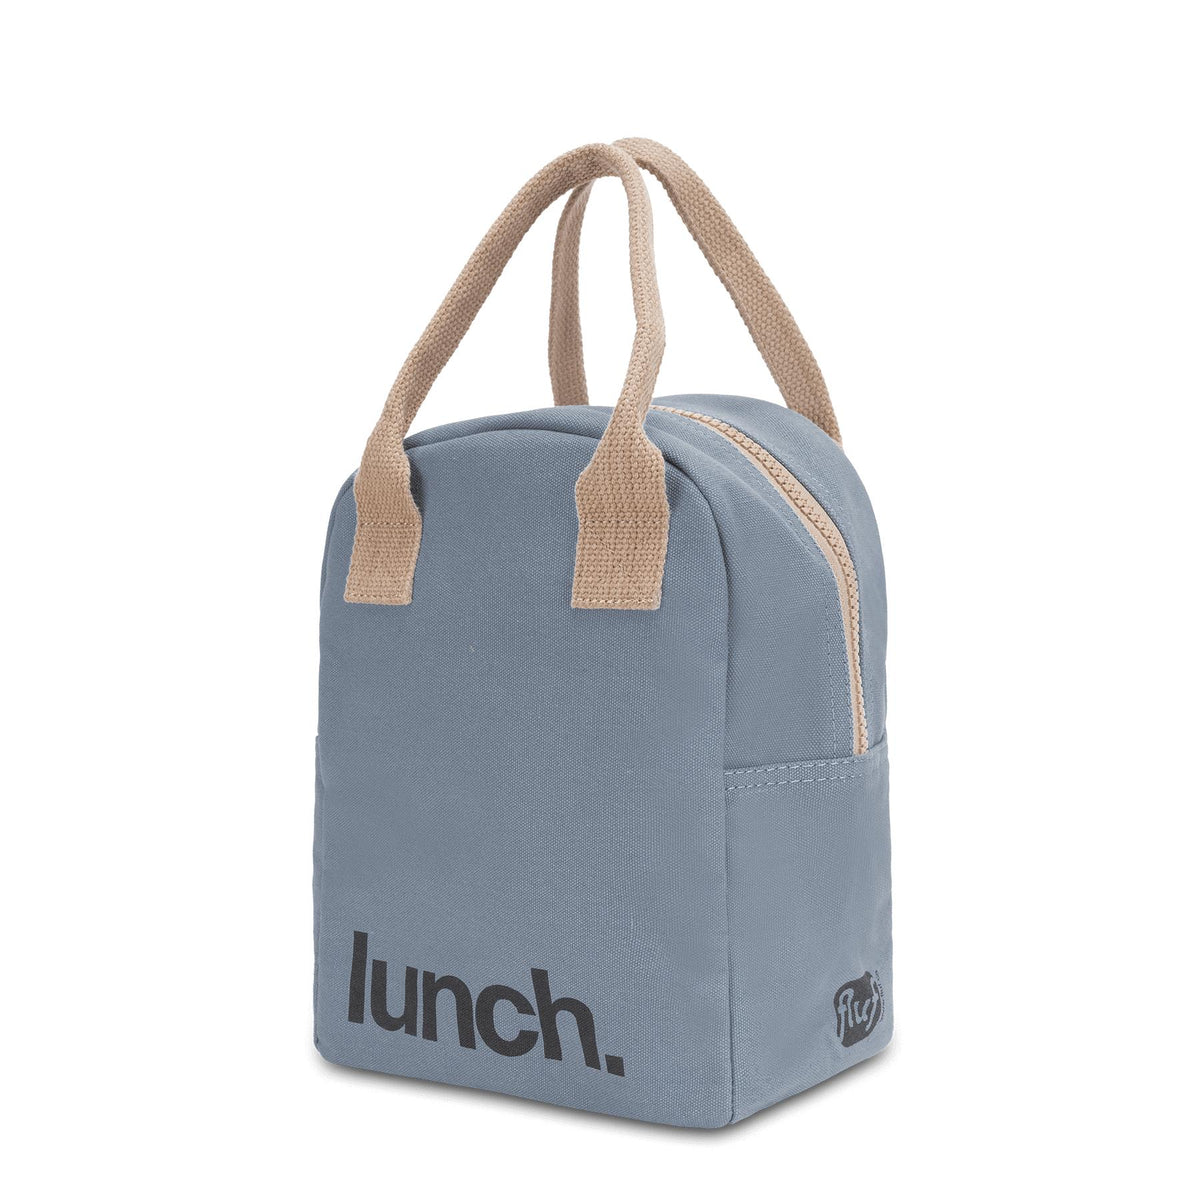 Zipper Lunch - 'Lunch' Blue